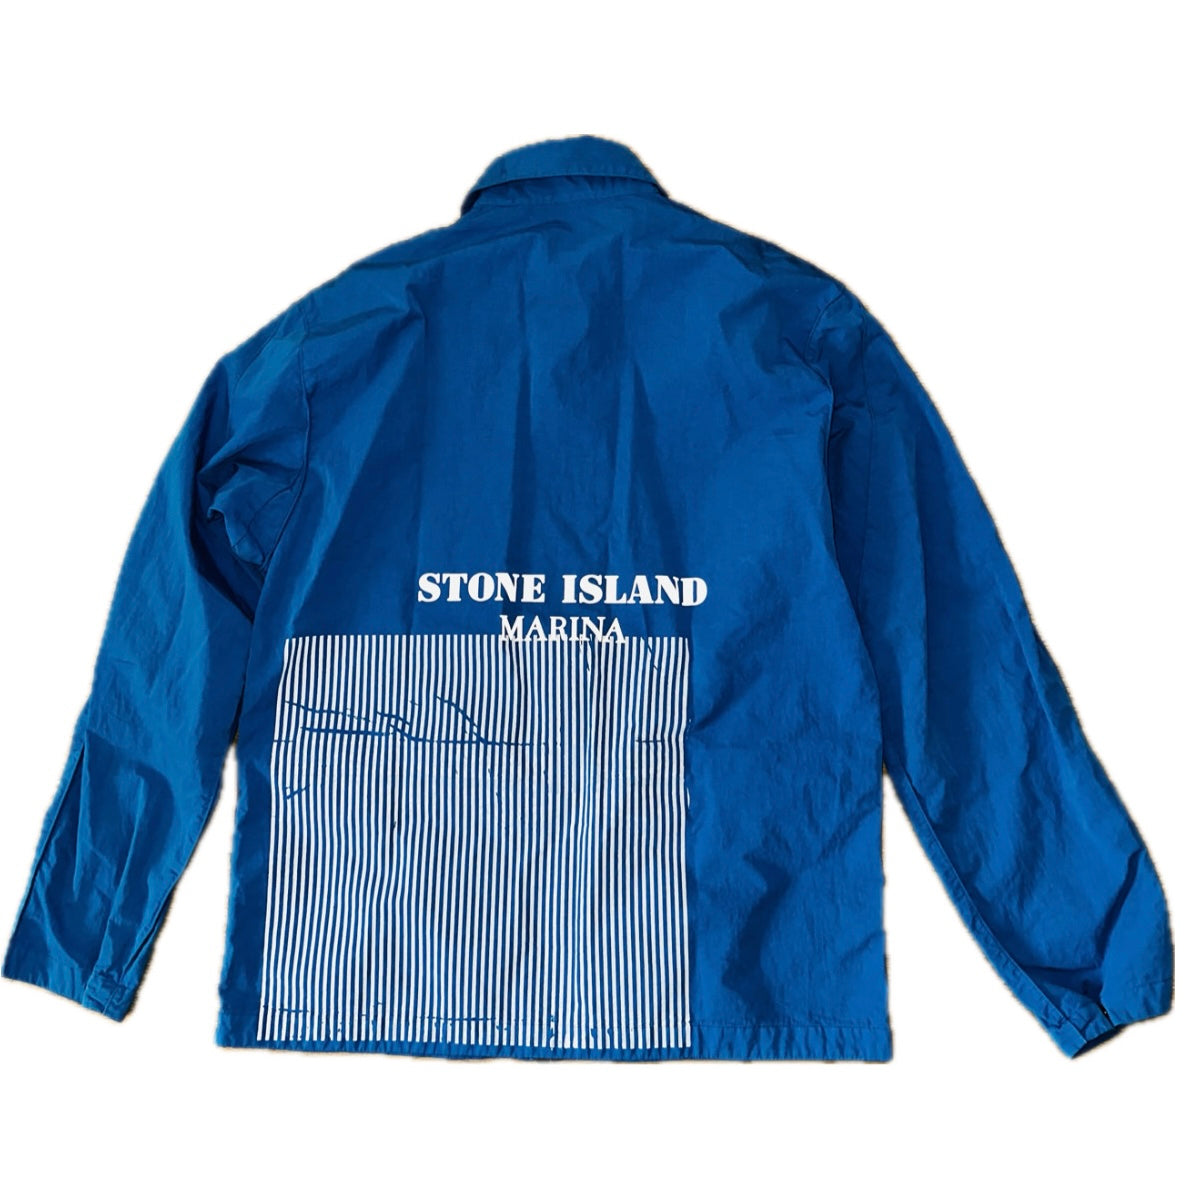 Stone Island Marina 2019 50 Fili Folded Print Overshirt - L - Made in Italy